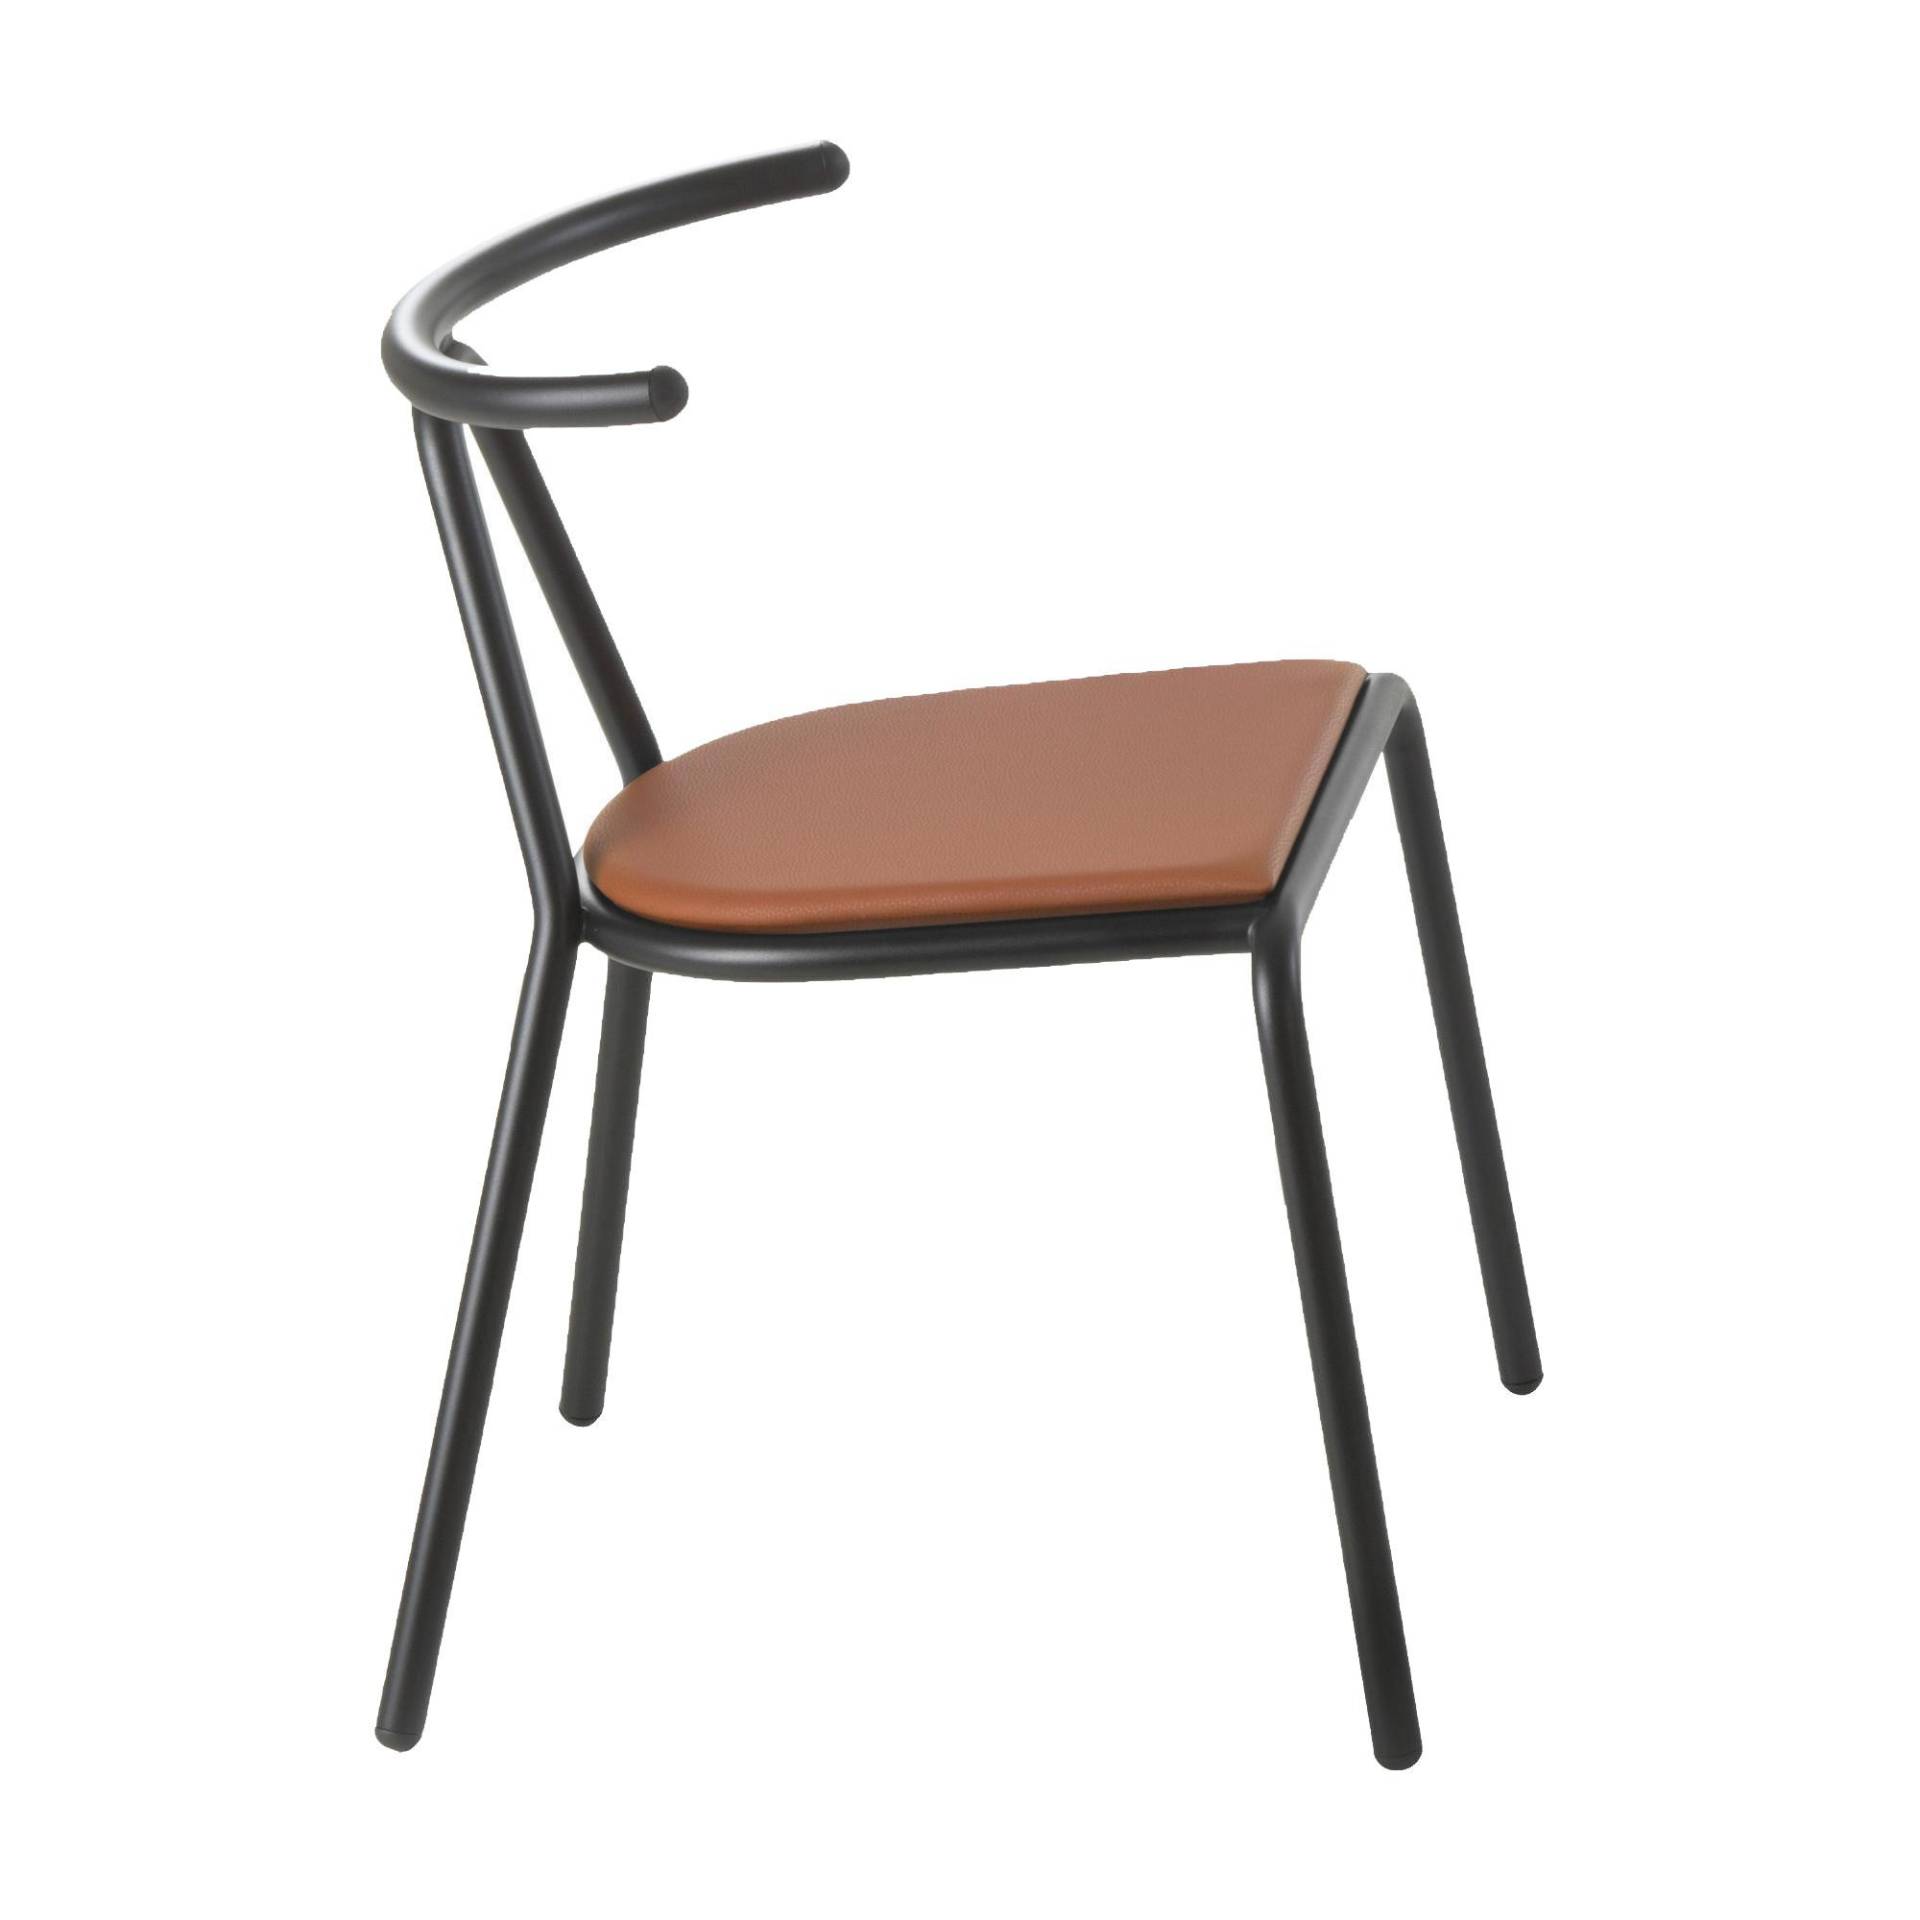 B-Line - Toro Stuhl Sitzfläche Platinum Flukso - orange/Sitzfläche: Platinum Flukso/Gestell schwarz/BxHxT 55x73,5x54cm von B-Line